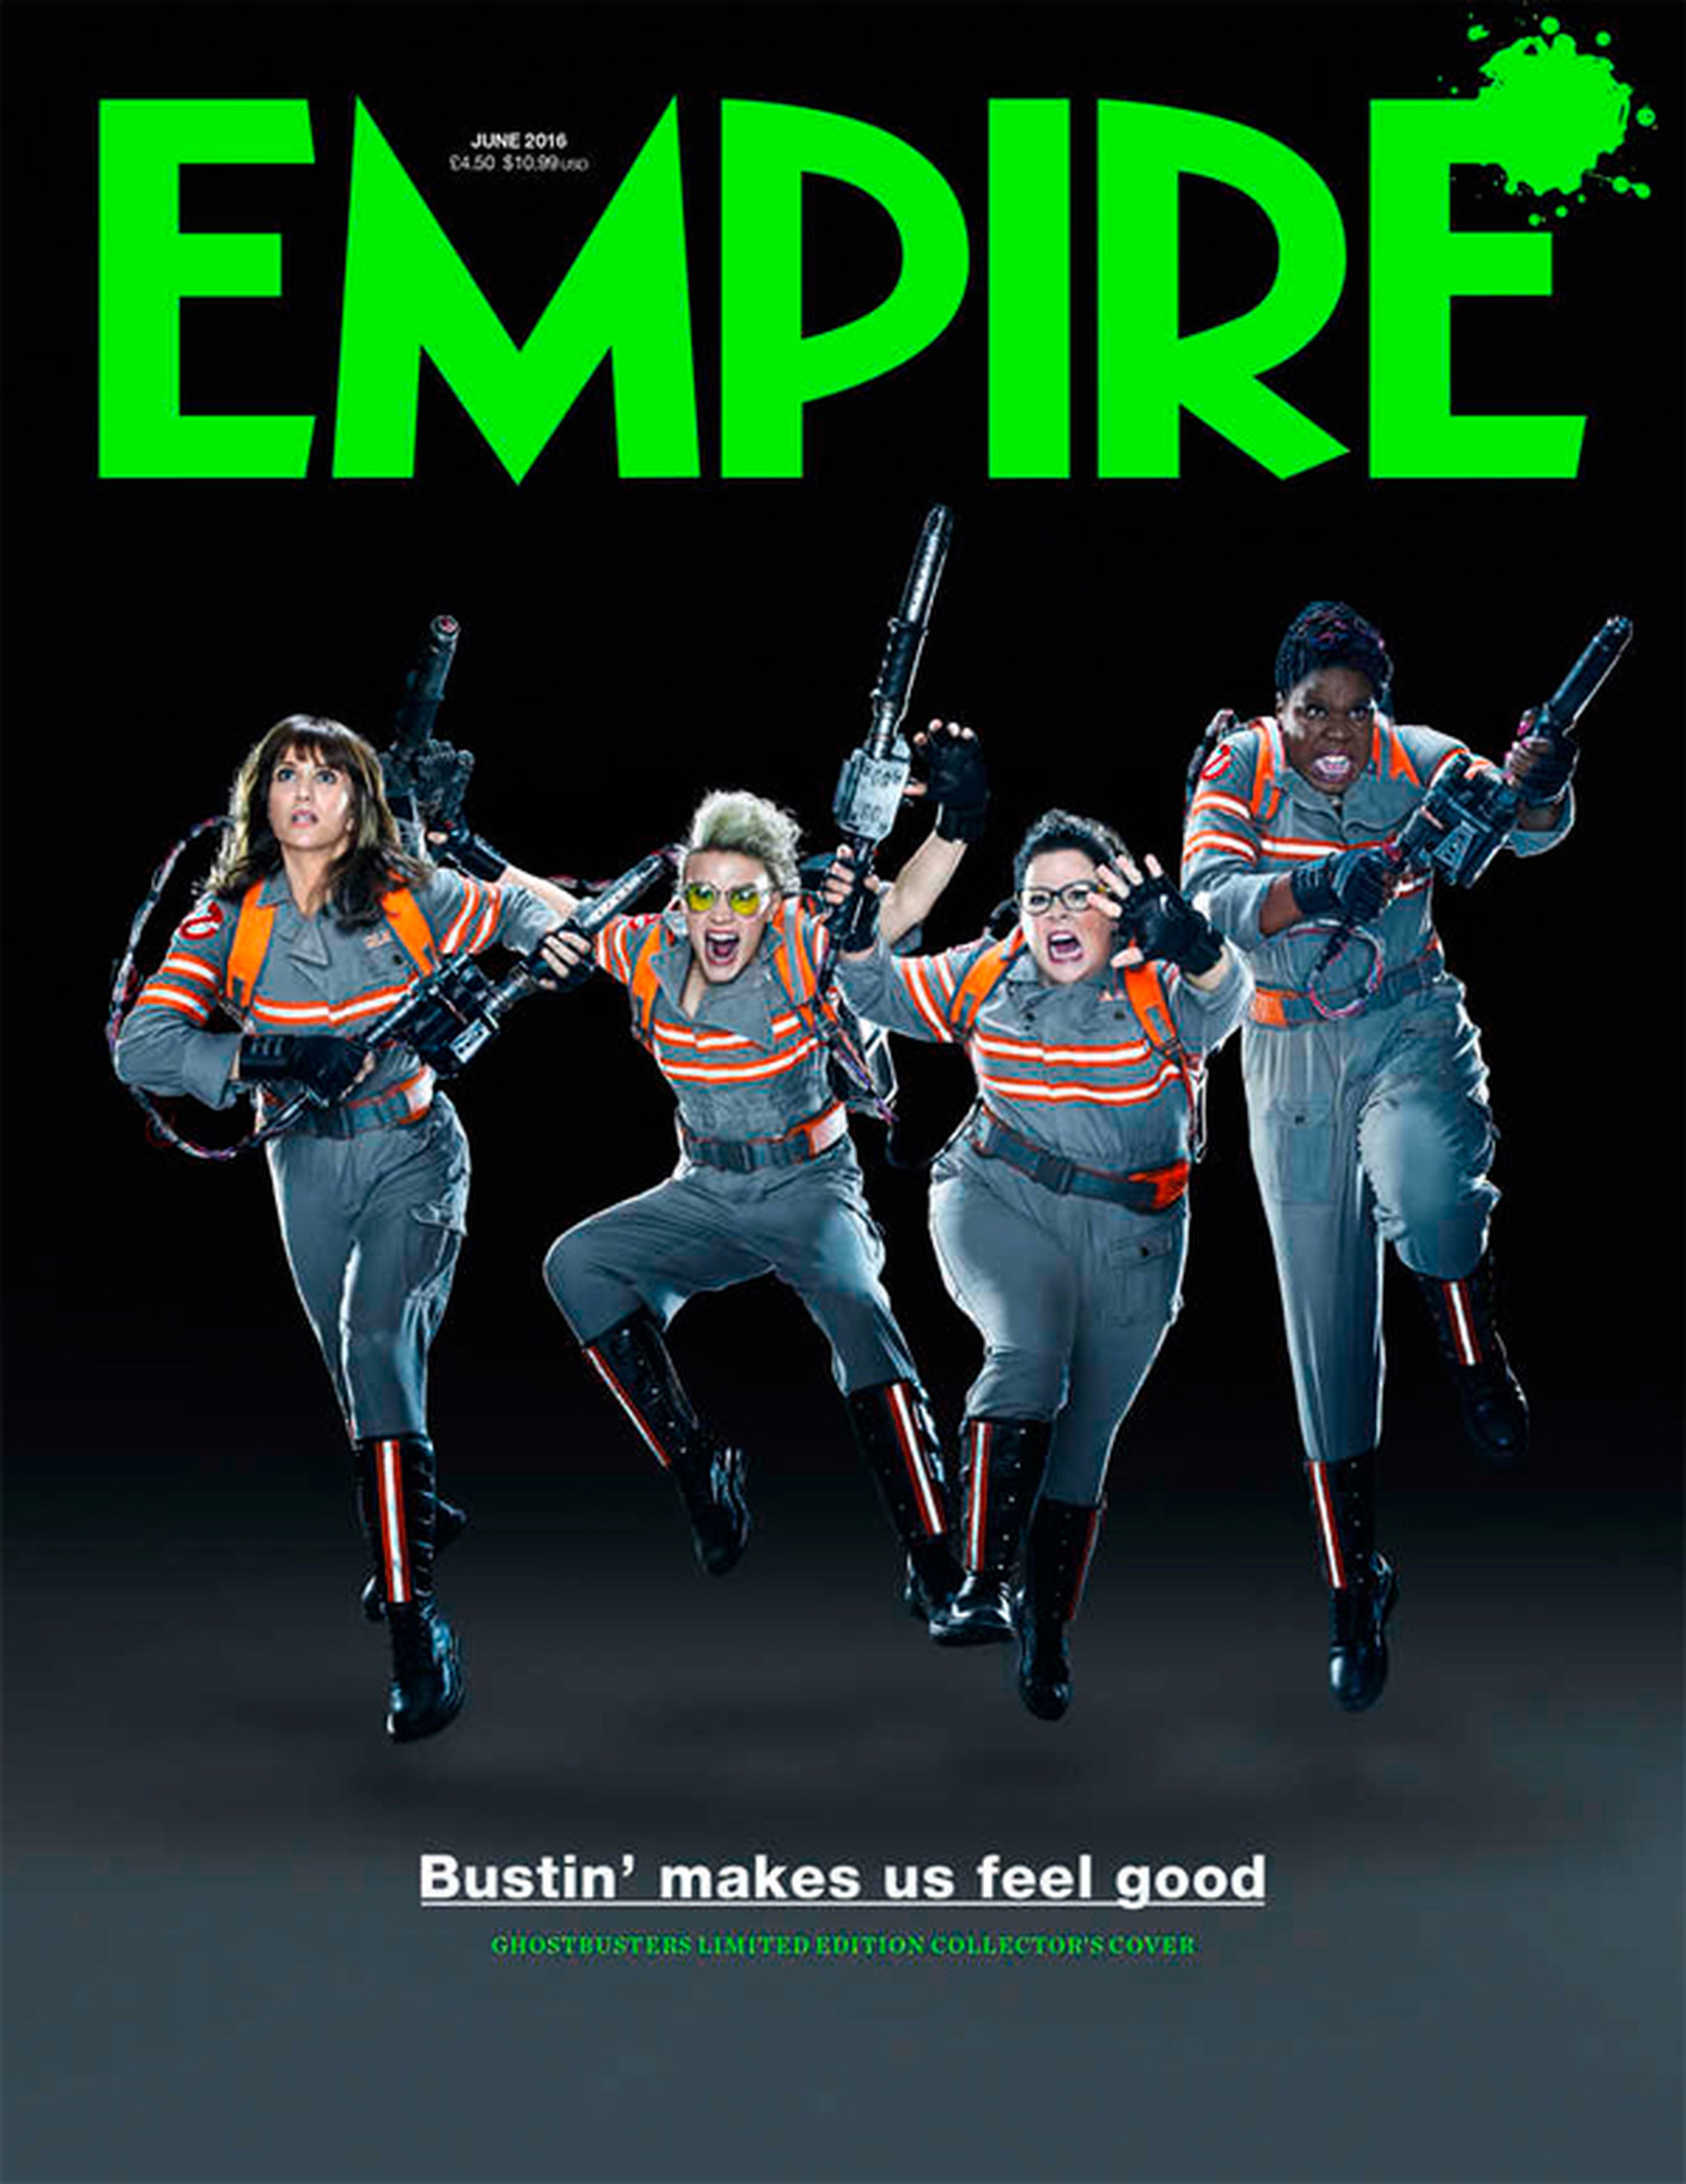 Cazafantasmas 3 - Moquete en la portada de la revista Empire